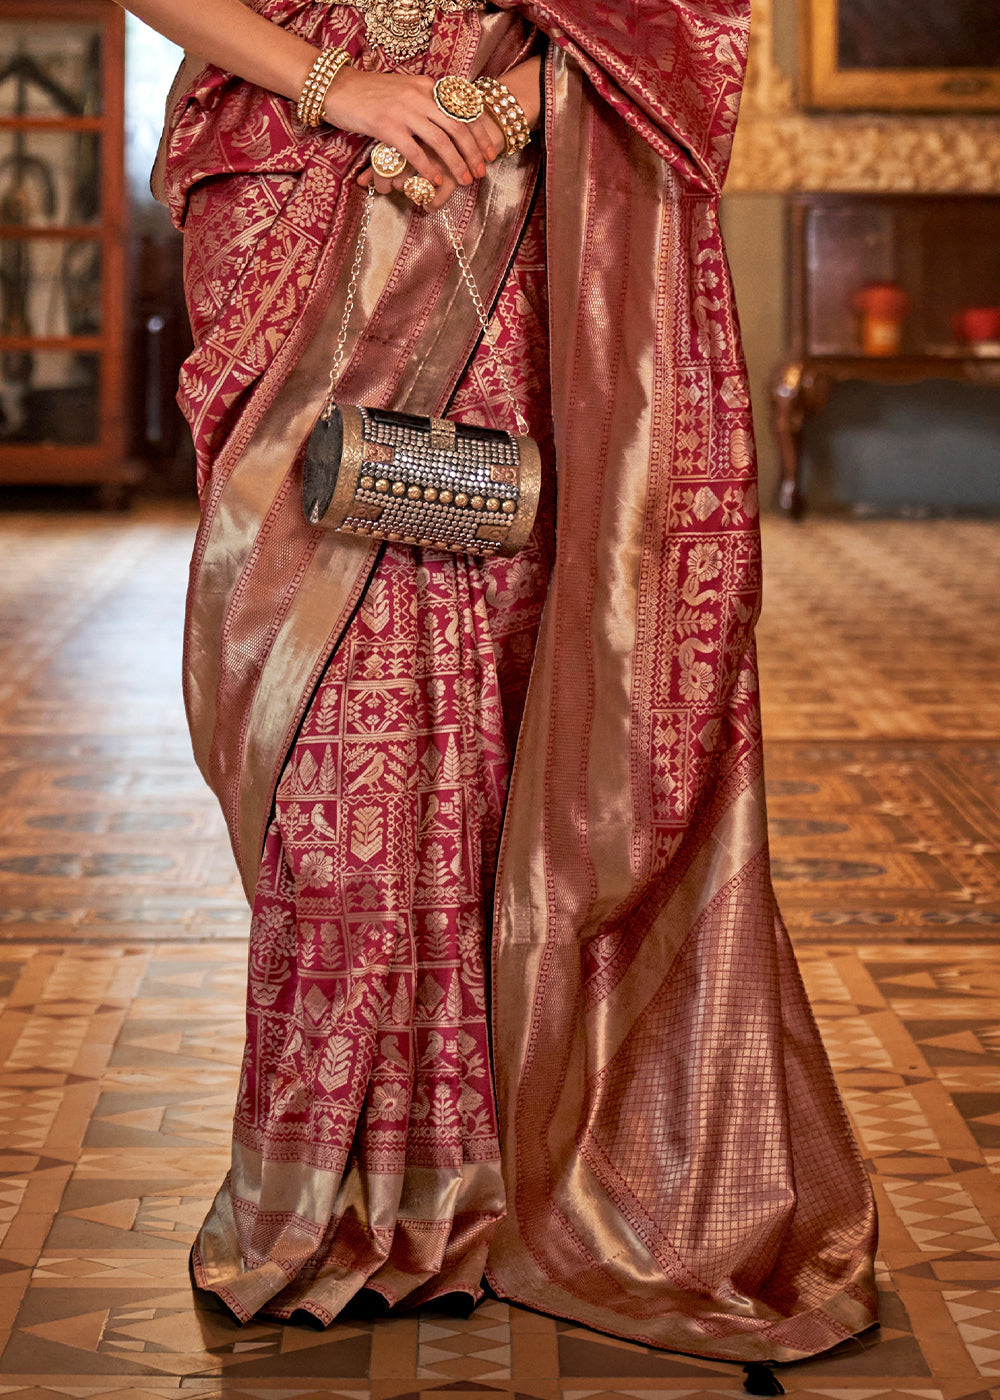 Cardinal Red Zari Woven Banarasi Silk Saree: Top Pick